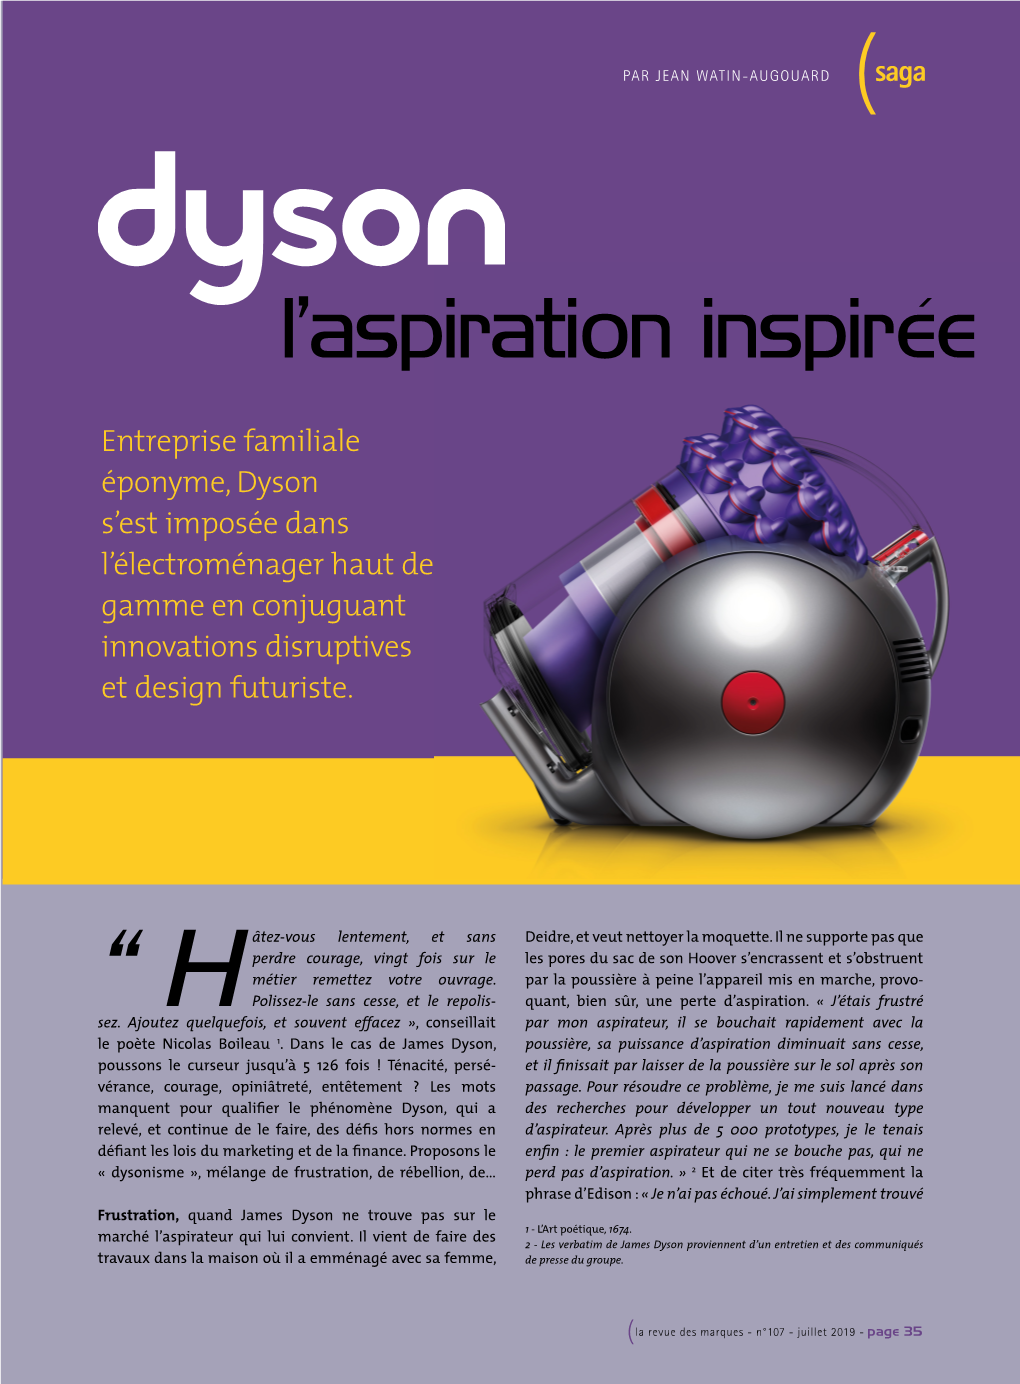 Dyson S’Est Imposée Dans L’Électroménager Haut De Gamme En Conjuguant Innovations Disruptives Et Design Futuriste